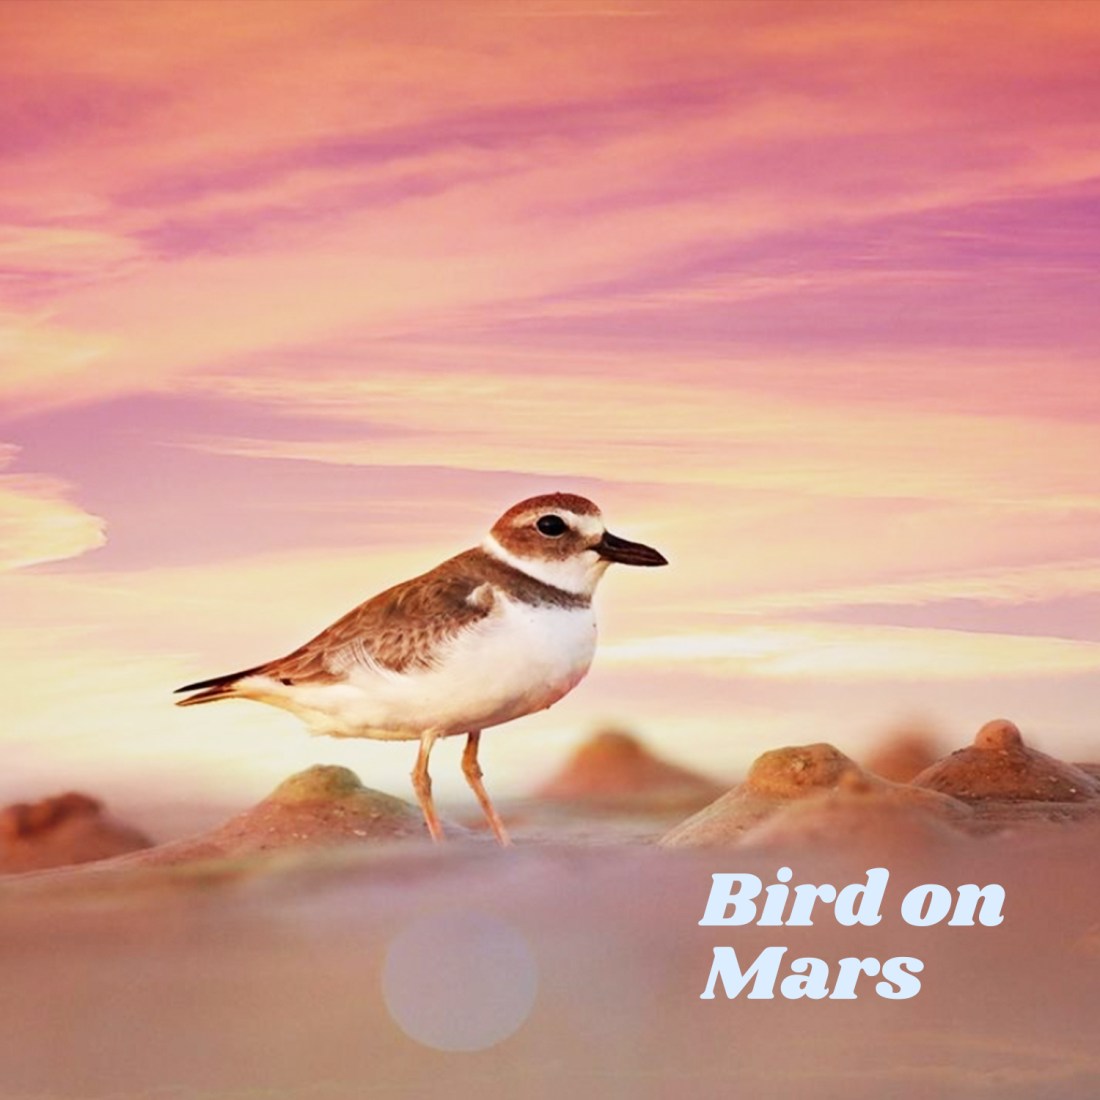 Bird on Mars